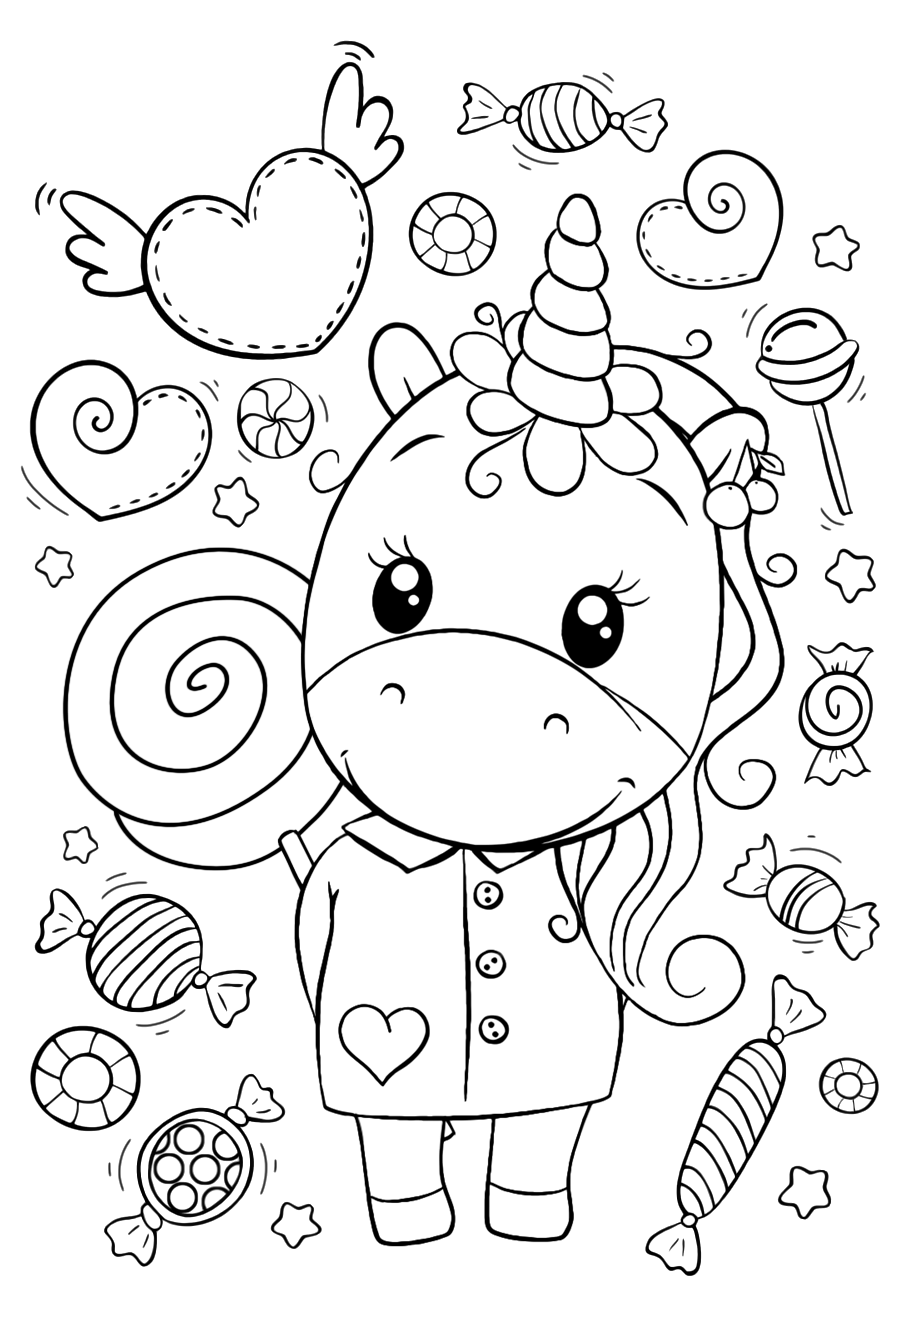 Раскраски для девочек «Милашки» Единорог и много сладостей, чтобы бесплатно распечатать в хорошем качестве А4